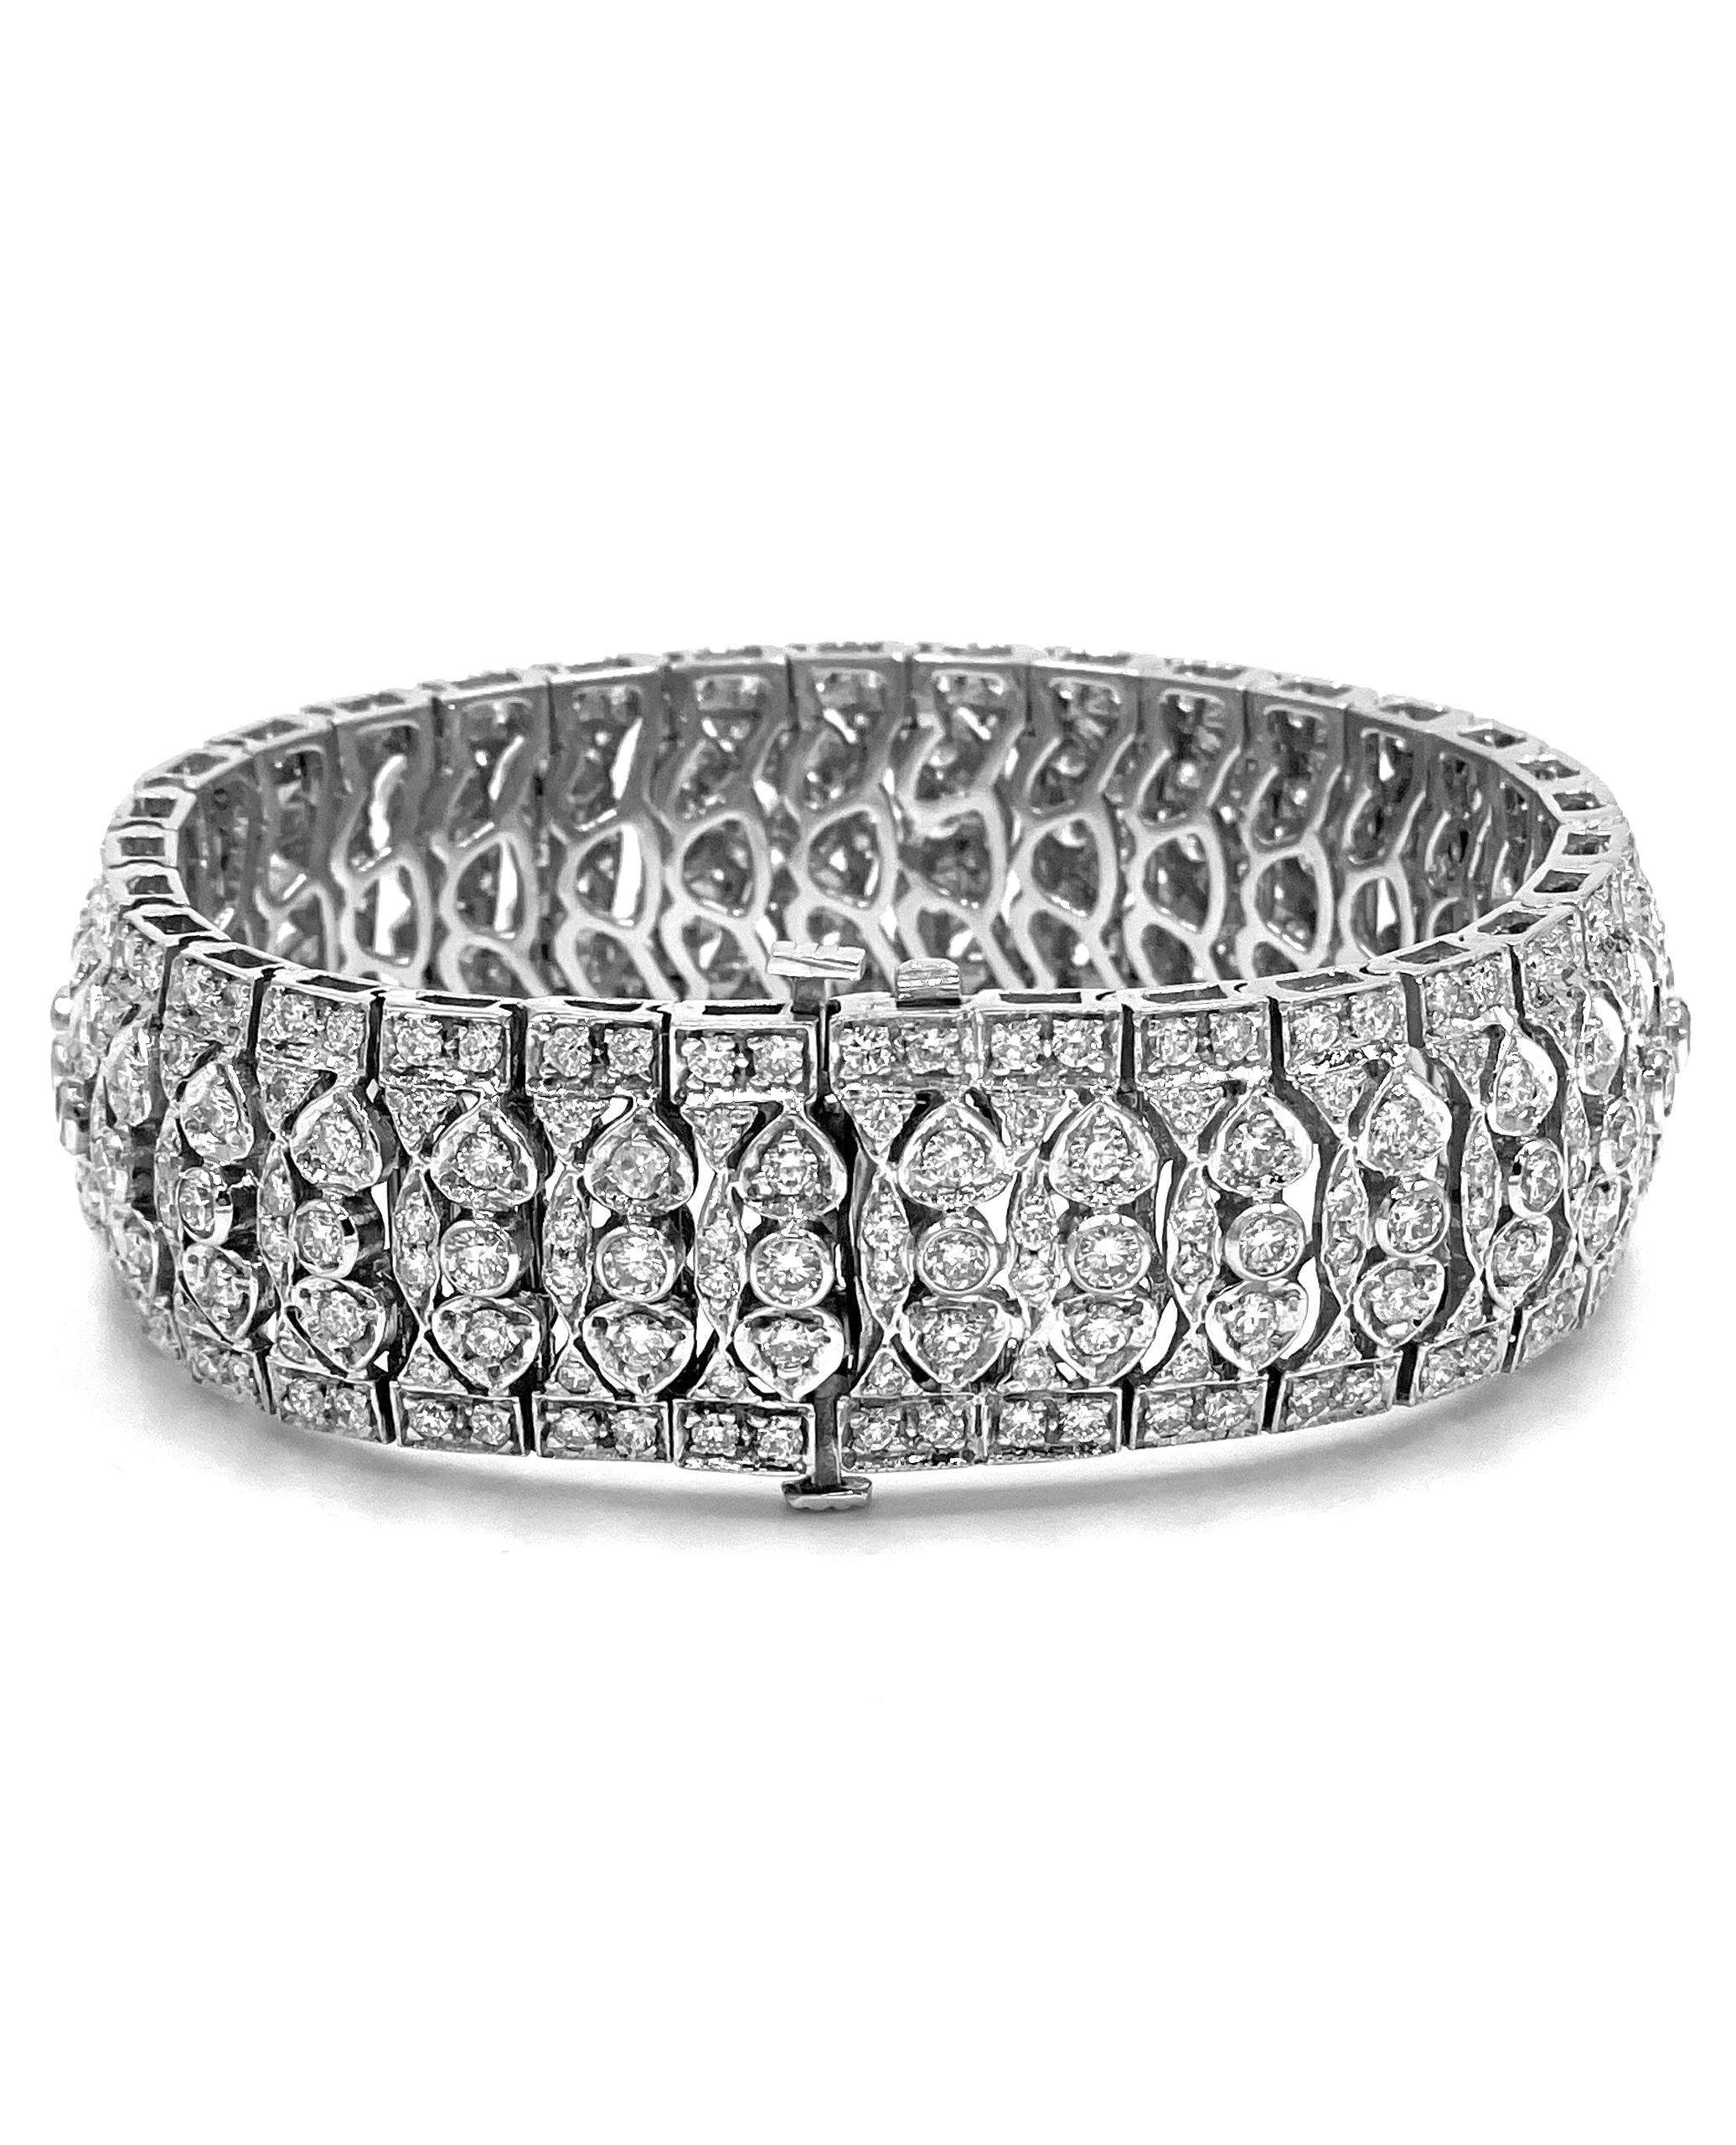 Bracelet en or blanc 18K de style vintage avec des diamants ronds.  Le bracelet mesure 18,6 mm de large et est serti de 352 diamants ronds de taille brillant d'un poids total de 13,0 carats.

* Longueur : 7,25 pouces
* Les diamants sont de couleur